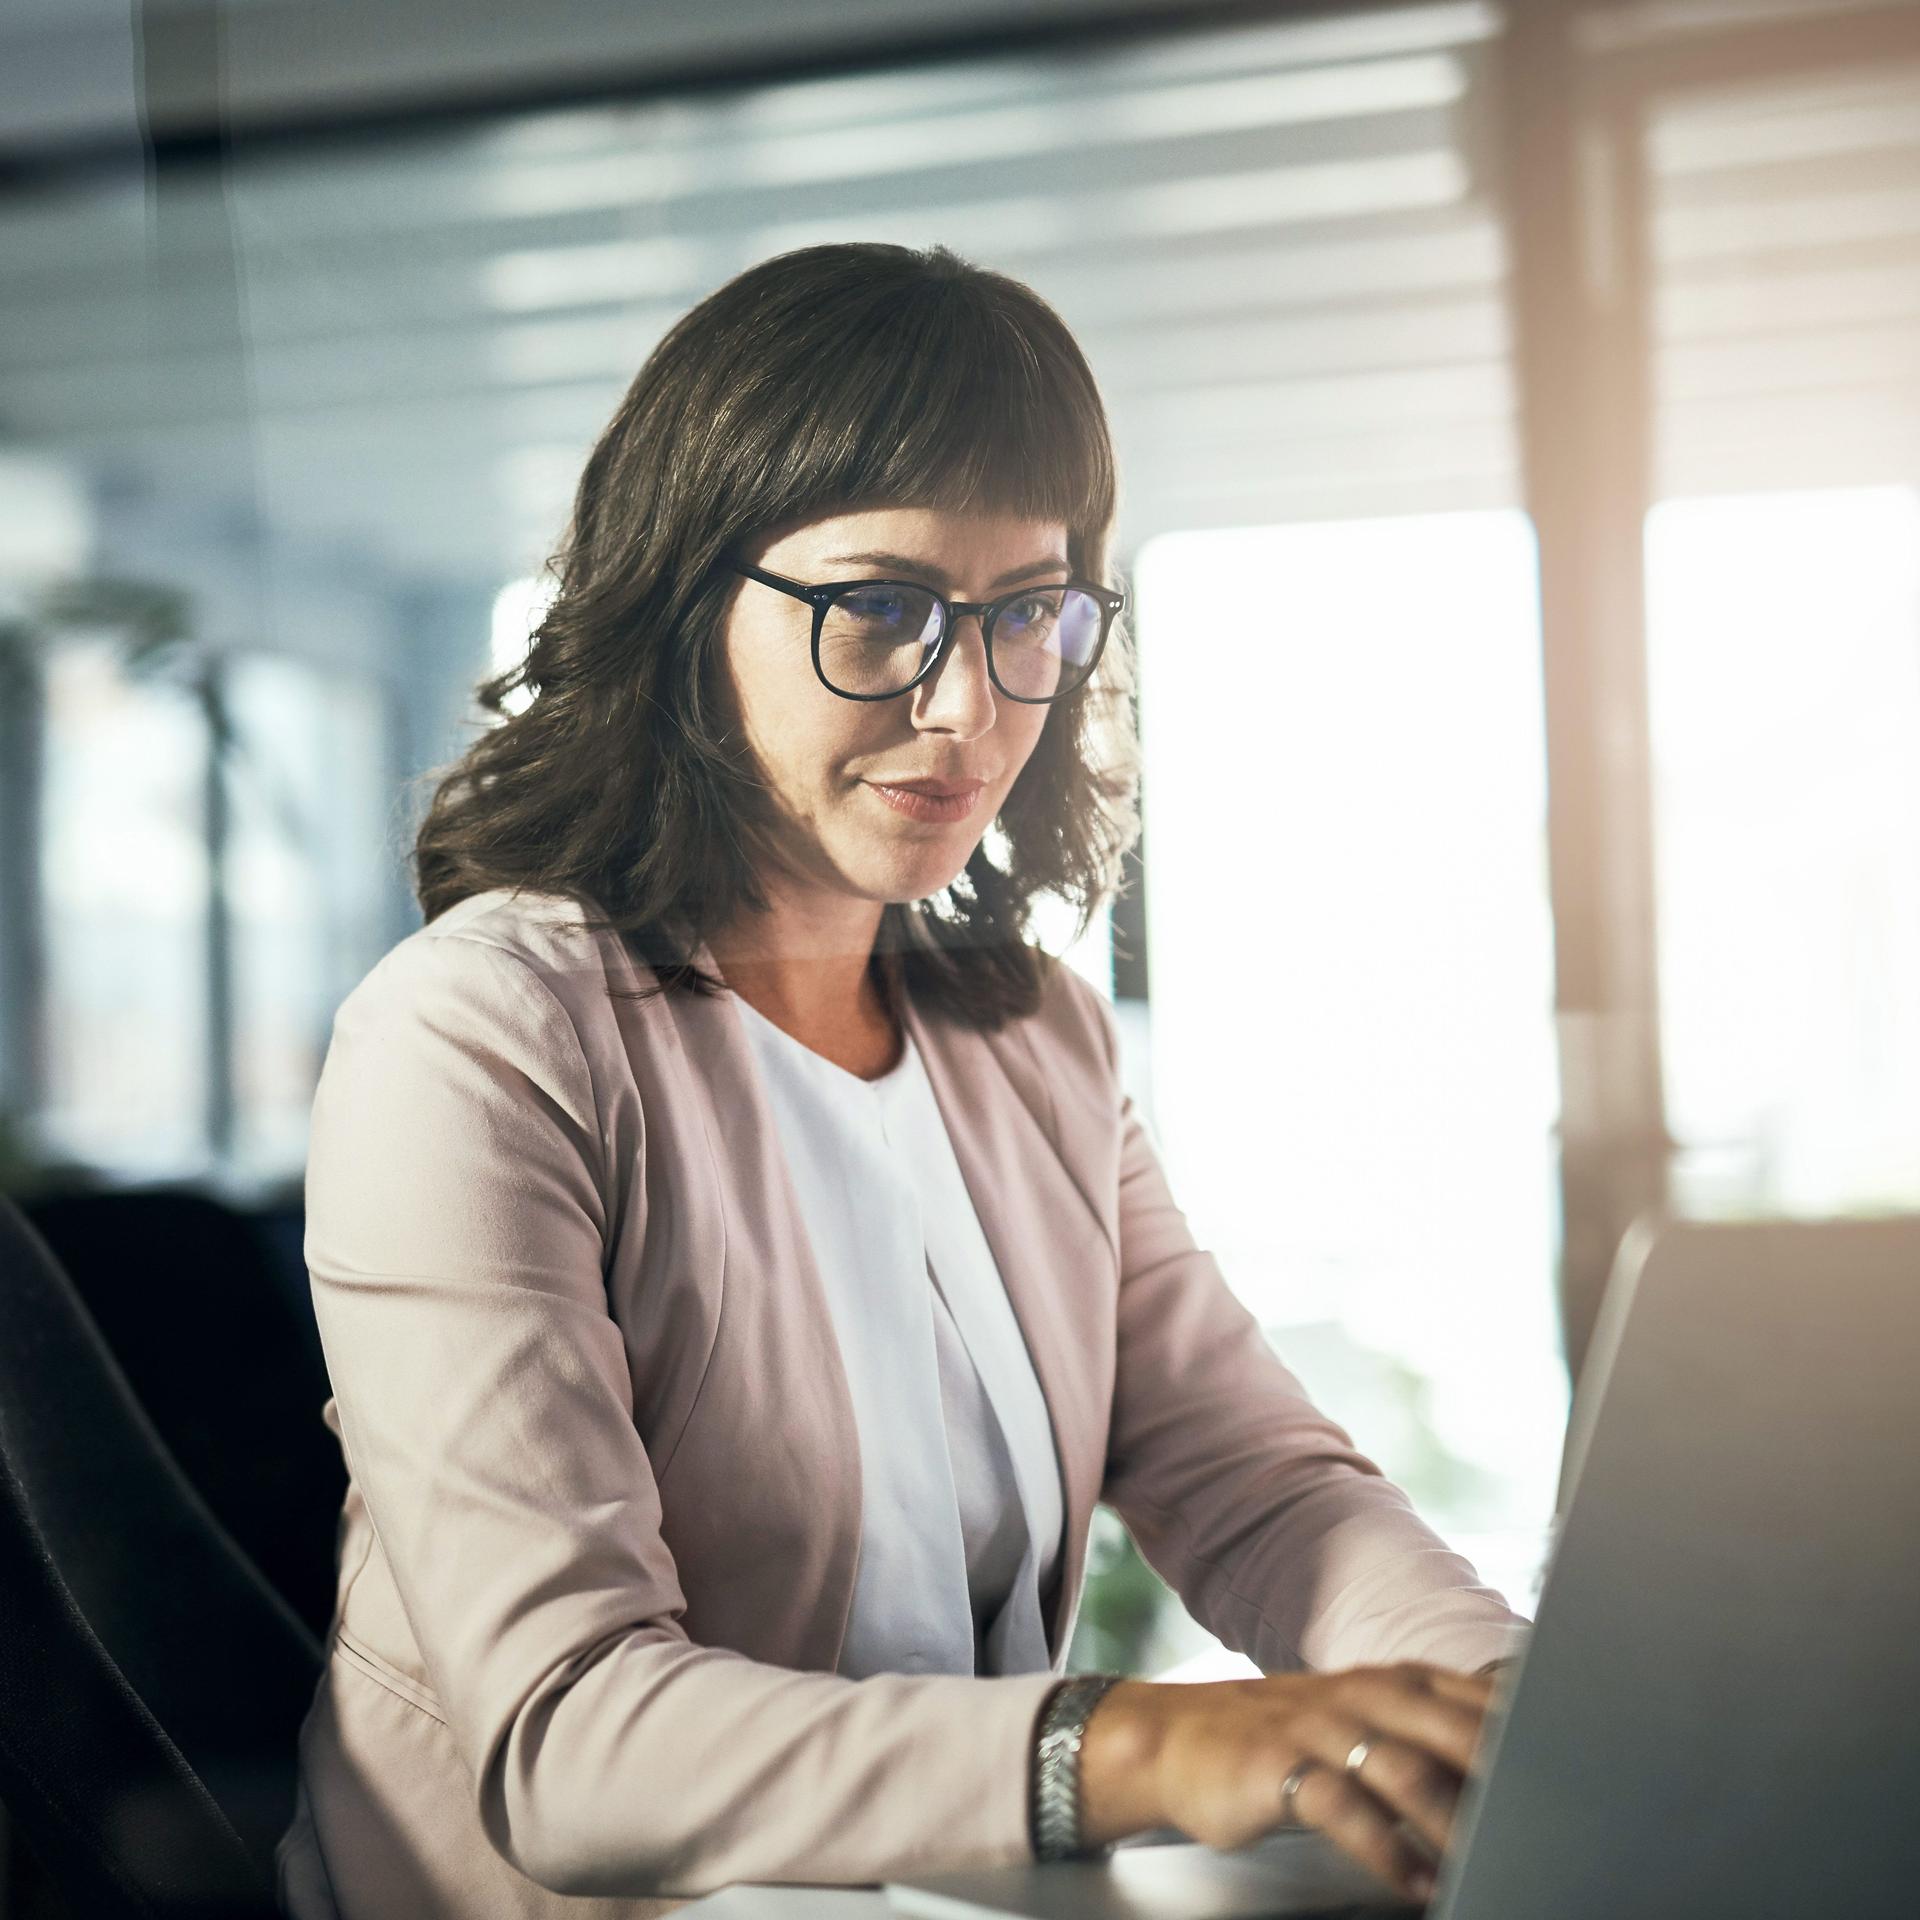 Seitenansicht einer Frau mit Brille mittleren Alters, die in einer abendlichen Lichtstimmung alleine vor einem Laptop sitzt. Im Hintergrund ist ein modernes Büro erkennbar.